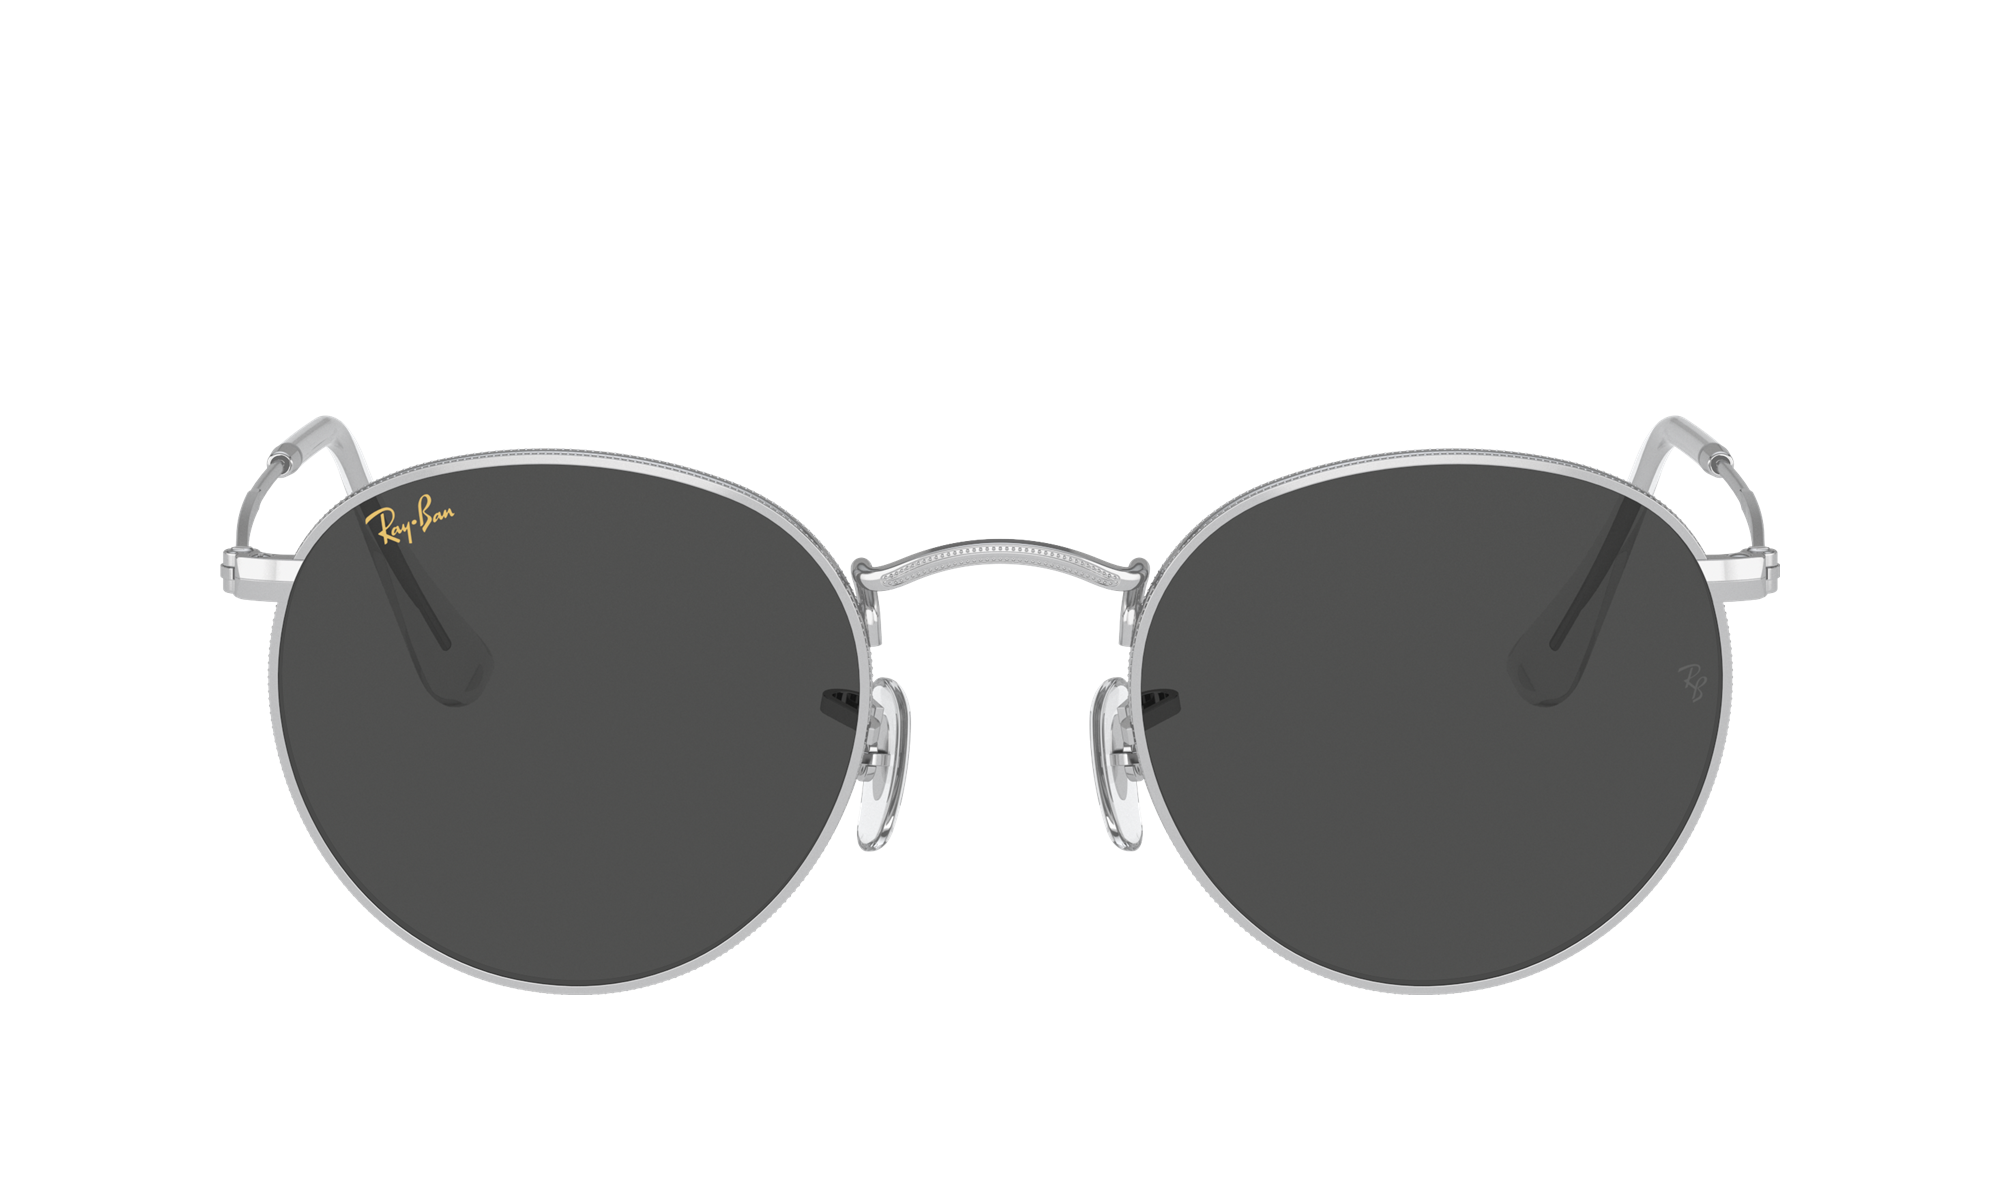 Buy Ray-Ban Aviator Sunglasses Green For Men Online @ Best Prices in India  | Flipkart.com